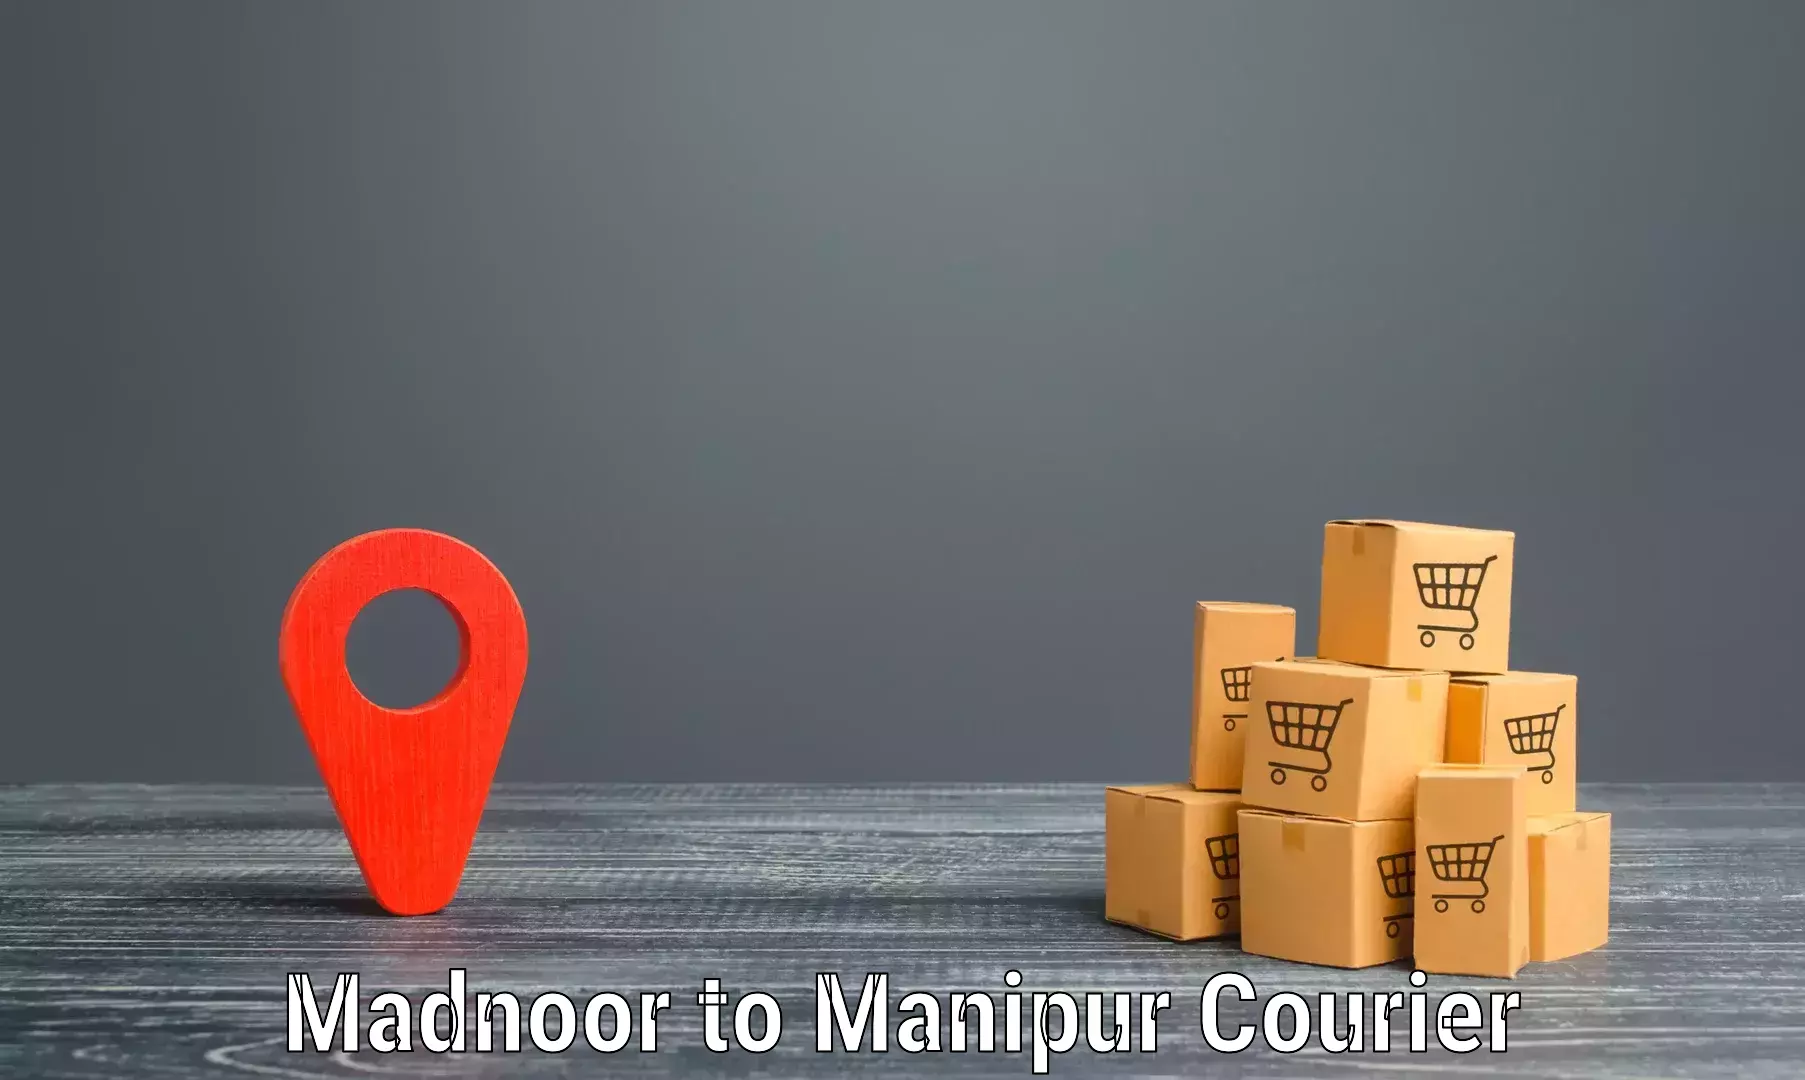 Next day courier Madnoor to Churachandpur